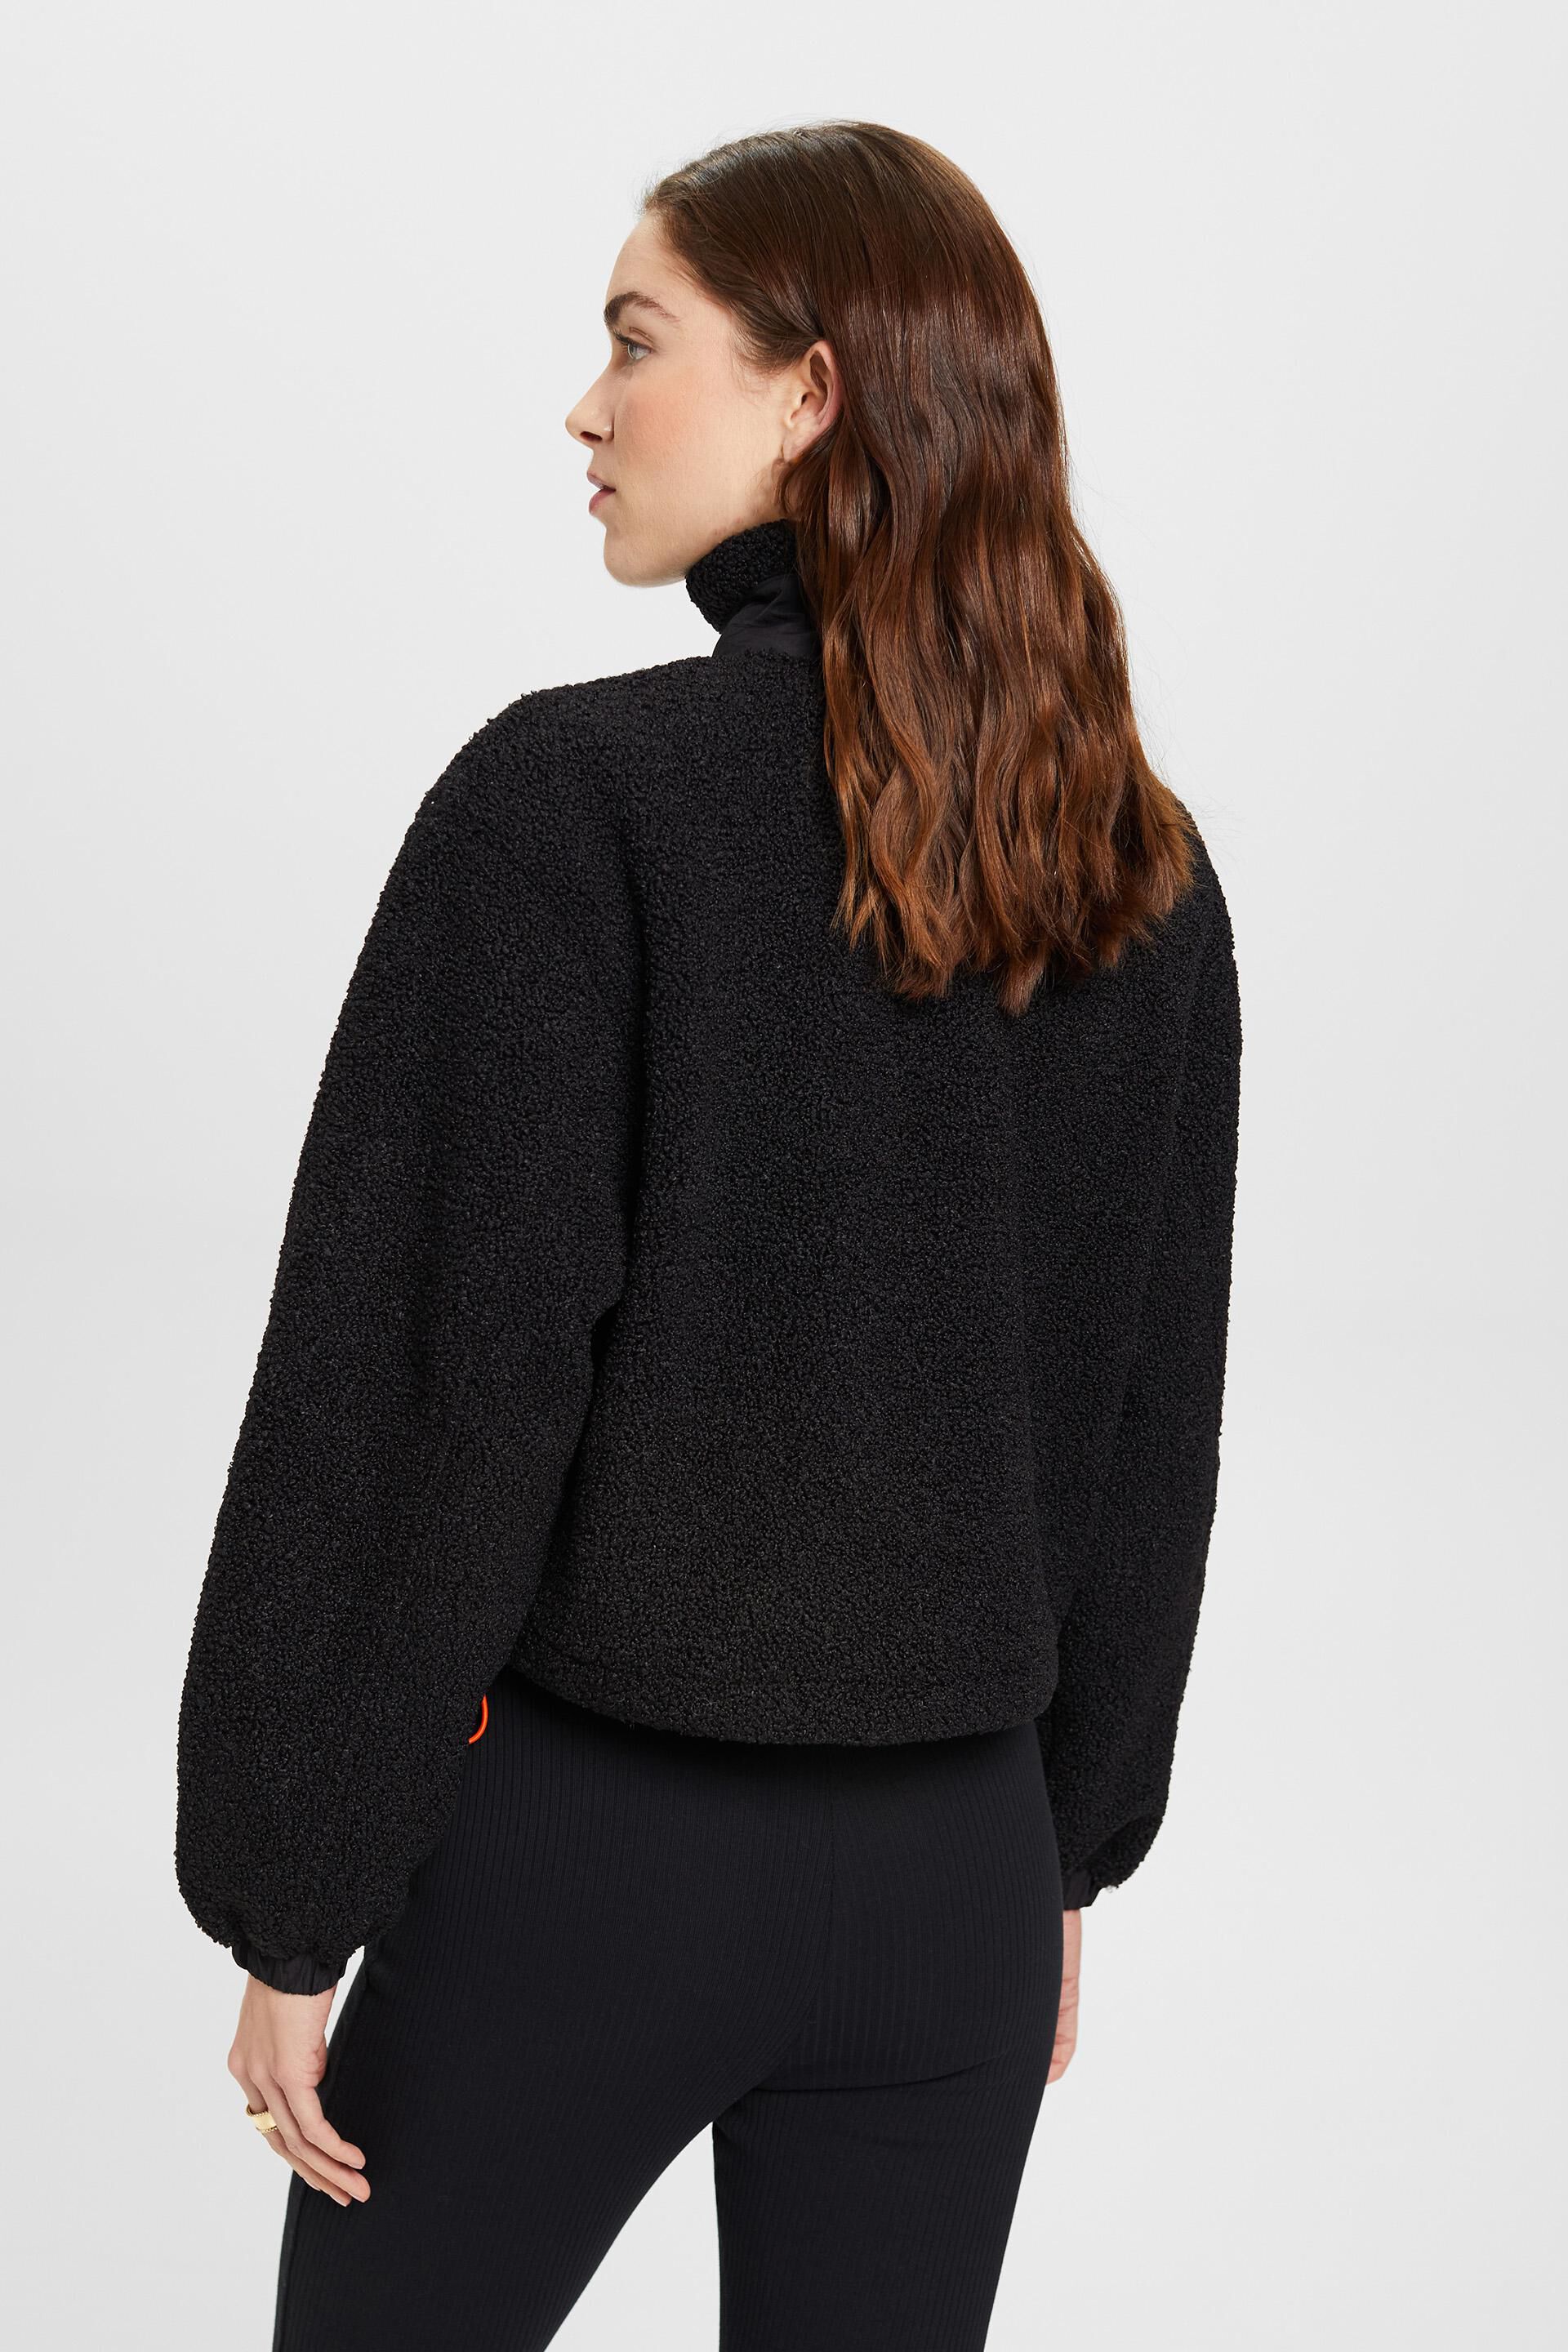 Esprit Damen Sweatshirt mit halbem aus Reißverschluss gemischtem Material